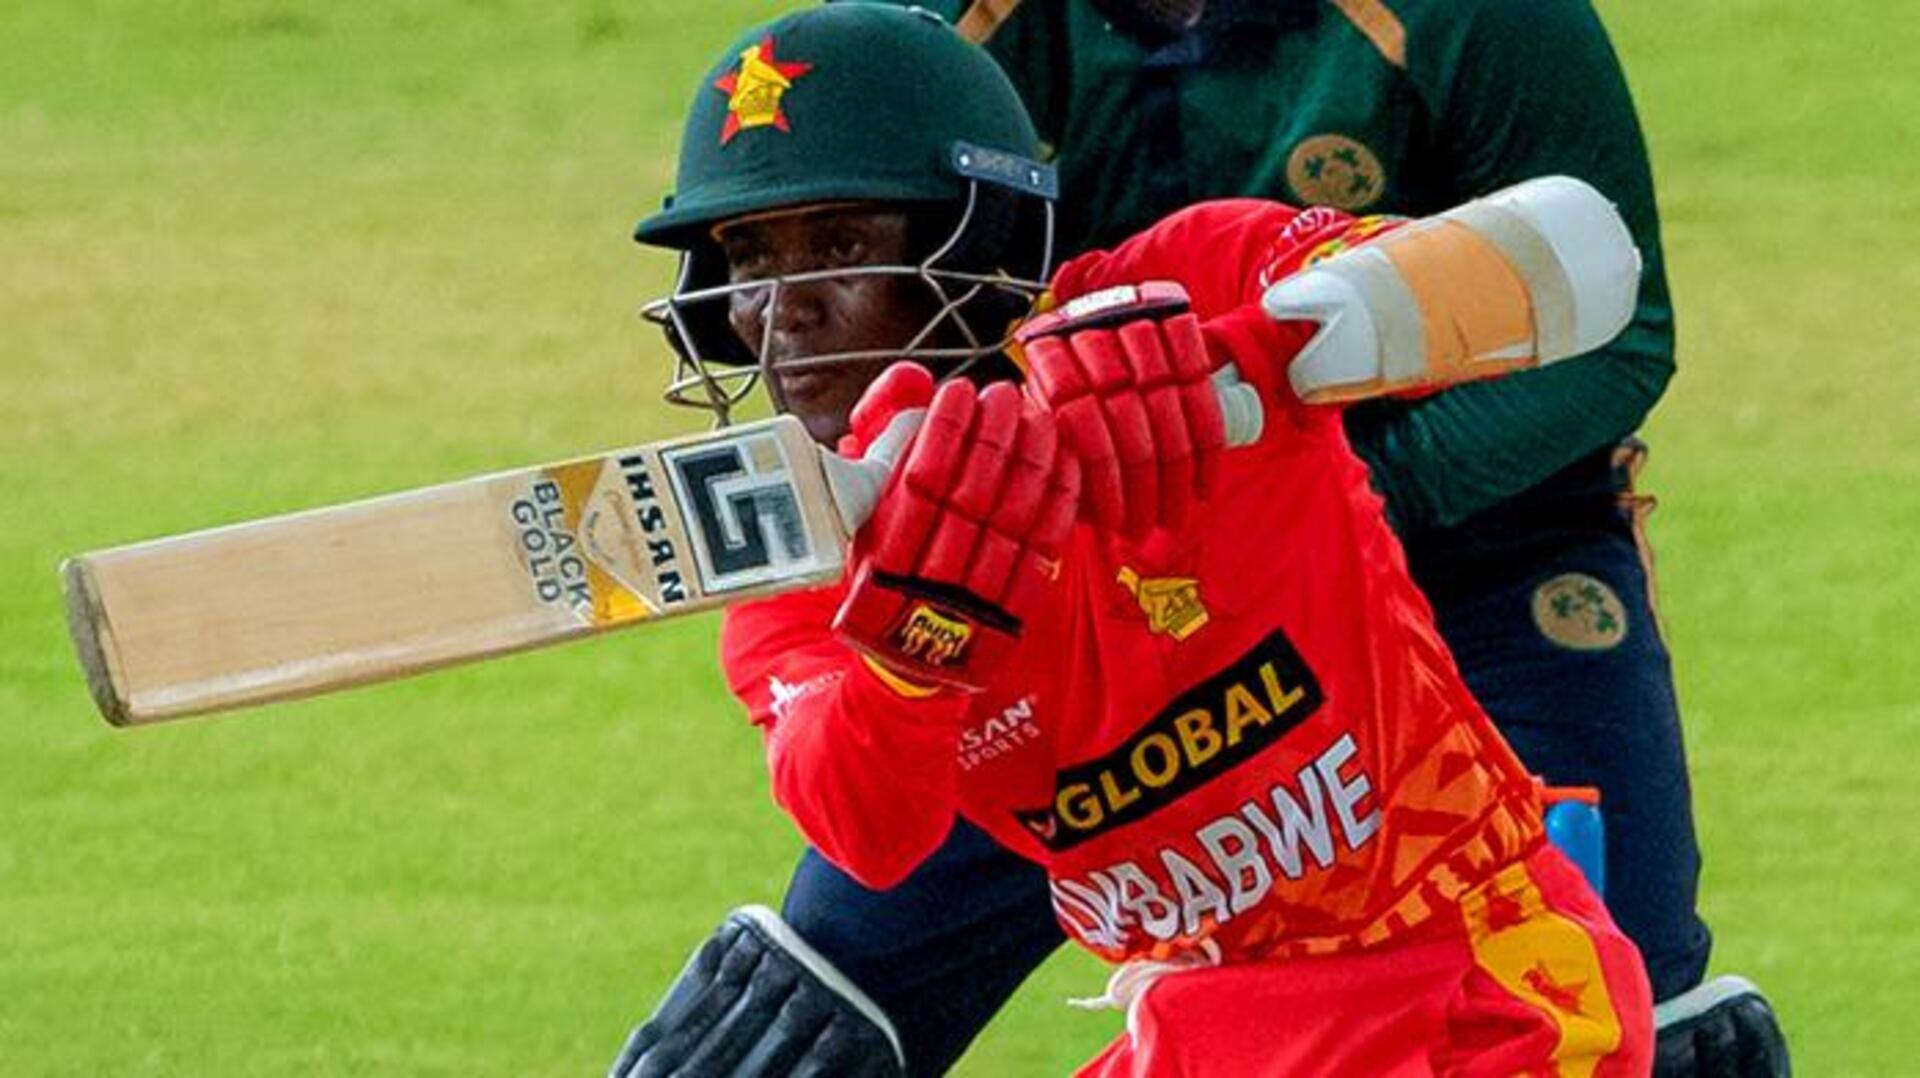 जिम्बाब्वे बनाम आयरलैंड: जॉयलॉर्ड गम्बी ने जमाया वनडे करियर का दूसरा अर्धशतक, जानिए उनके आंकड़े 